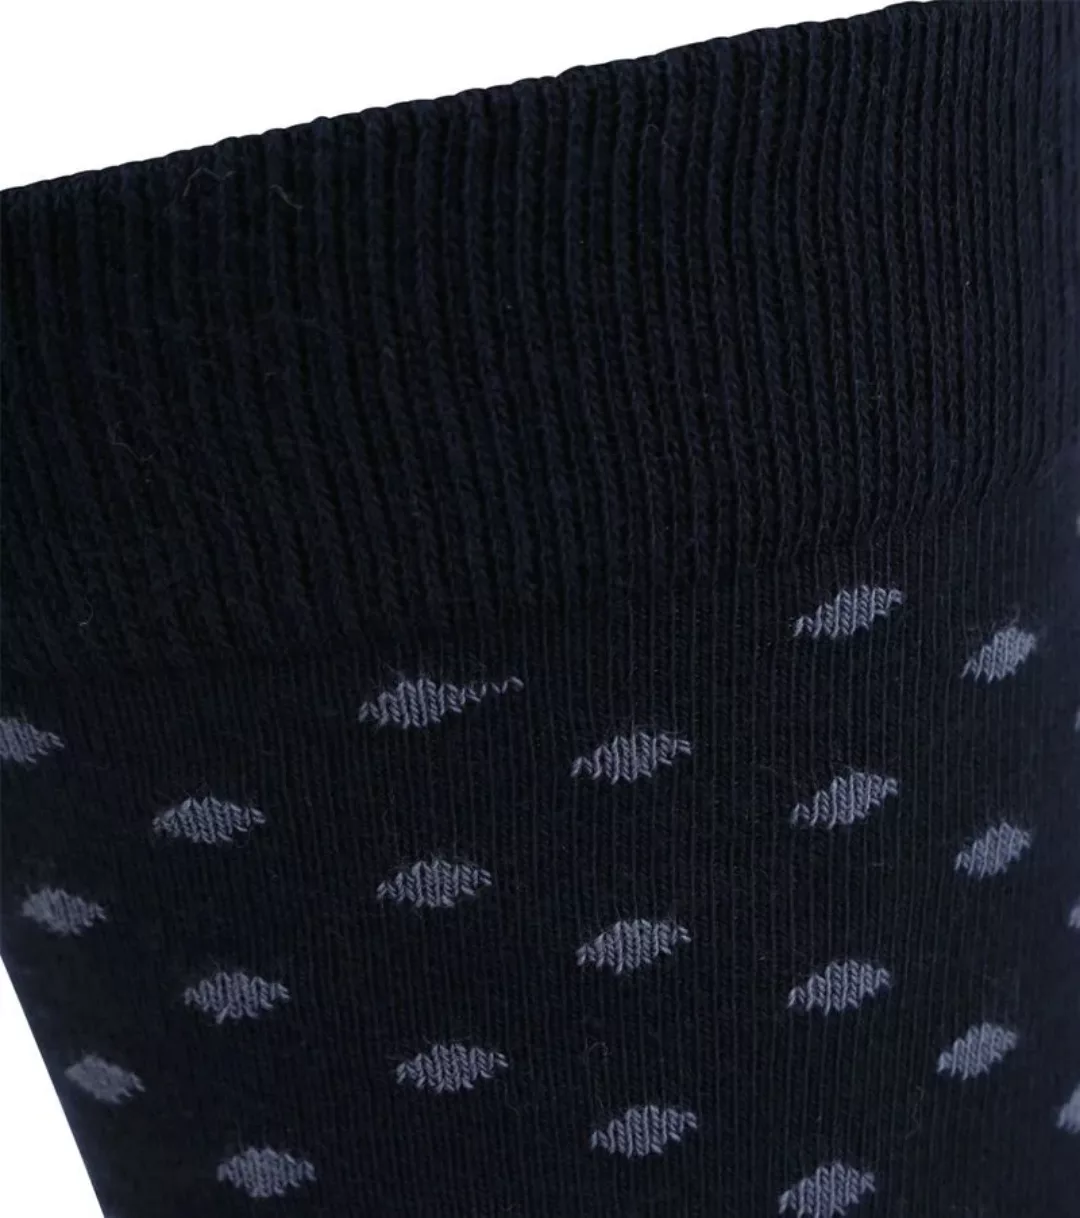 Suitable Socken 3-Pack Druck Navy - Größe 42-46 günstig online kaufen